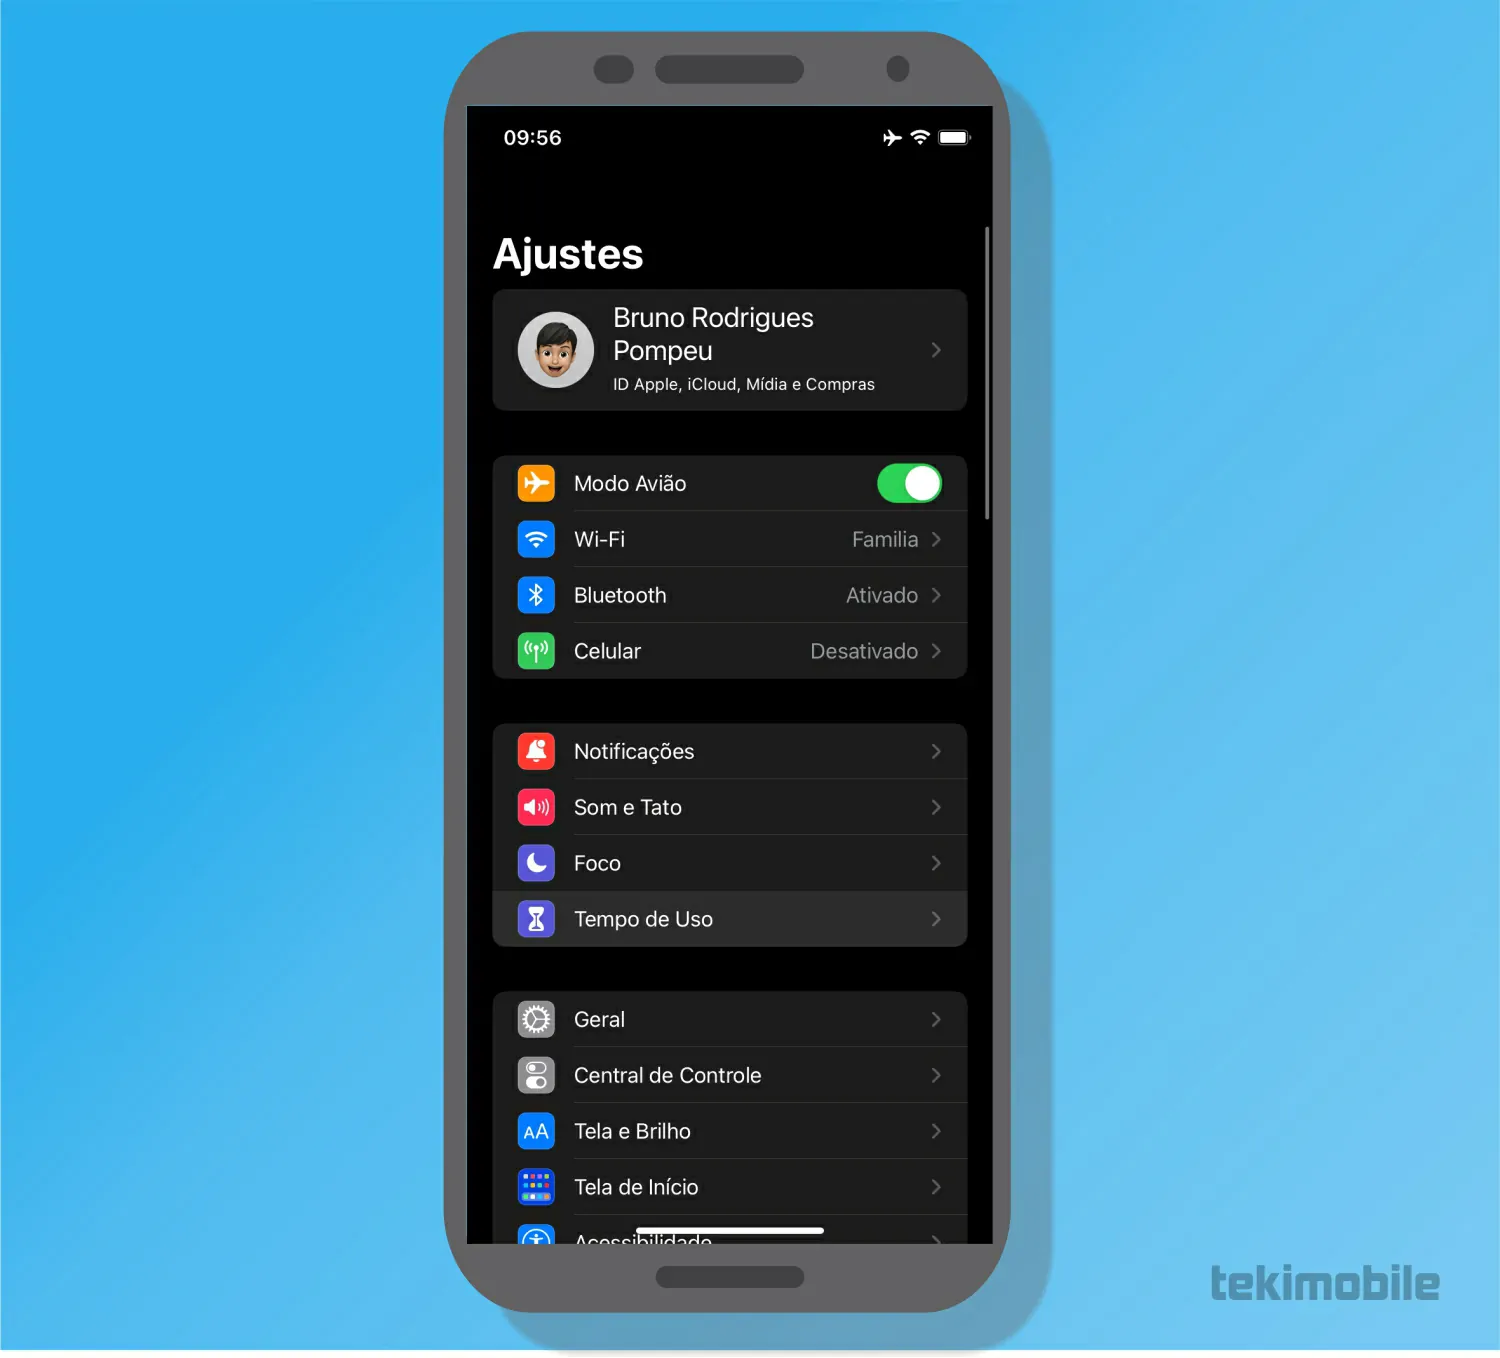 Toque em Tempo de Uso - Como saber tempo gasto no celular [Android e iPhone]